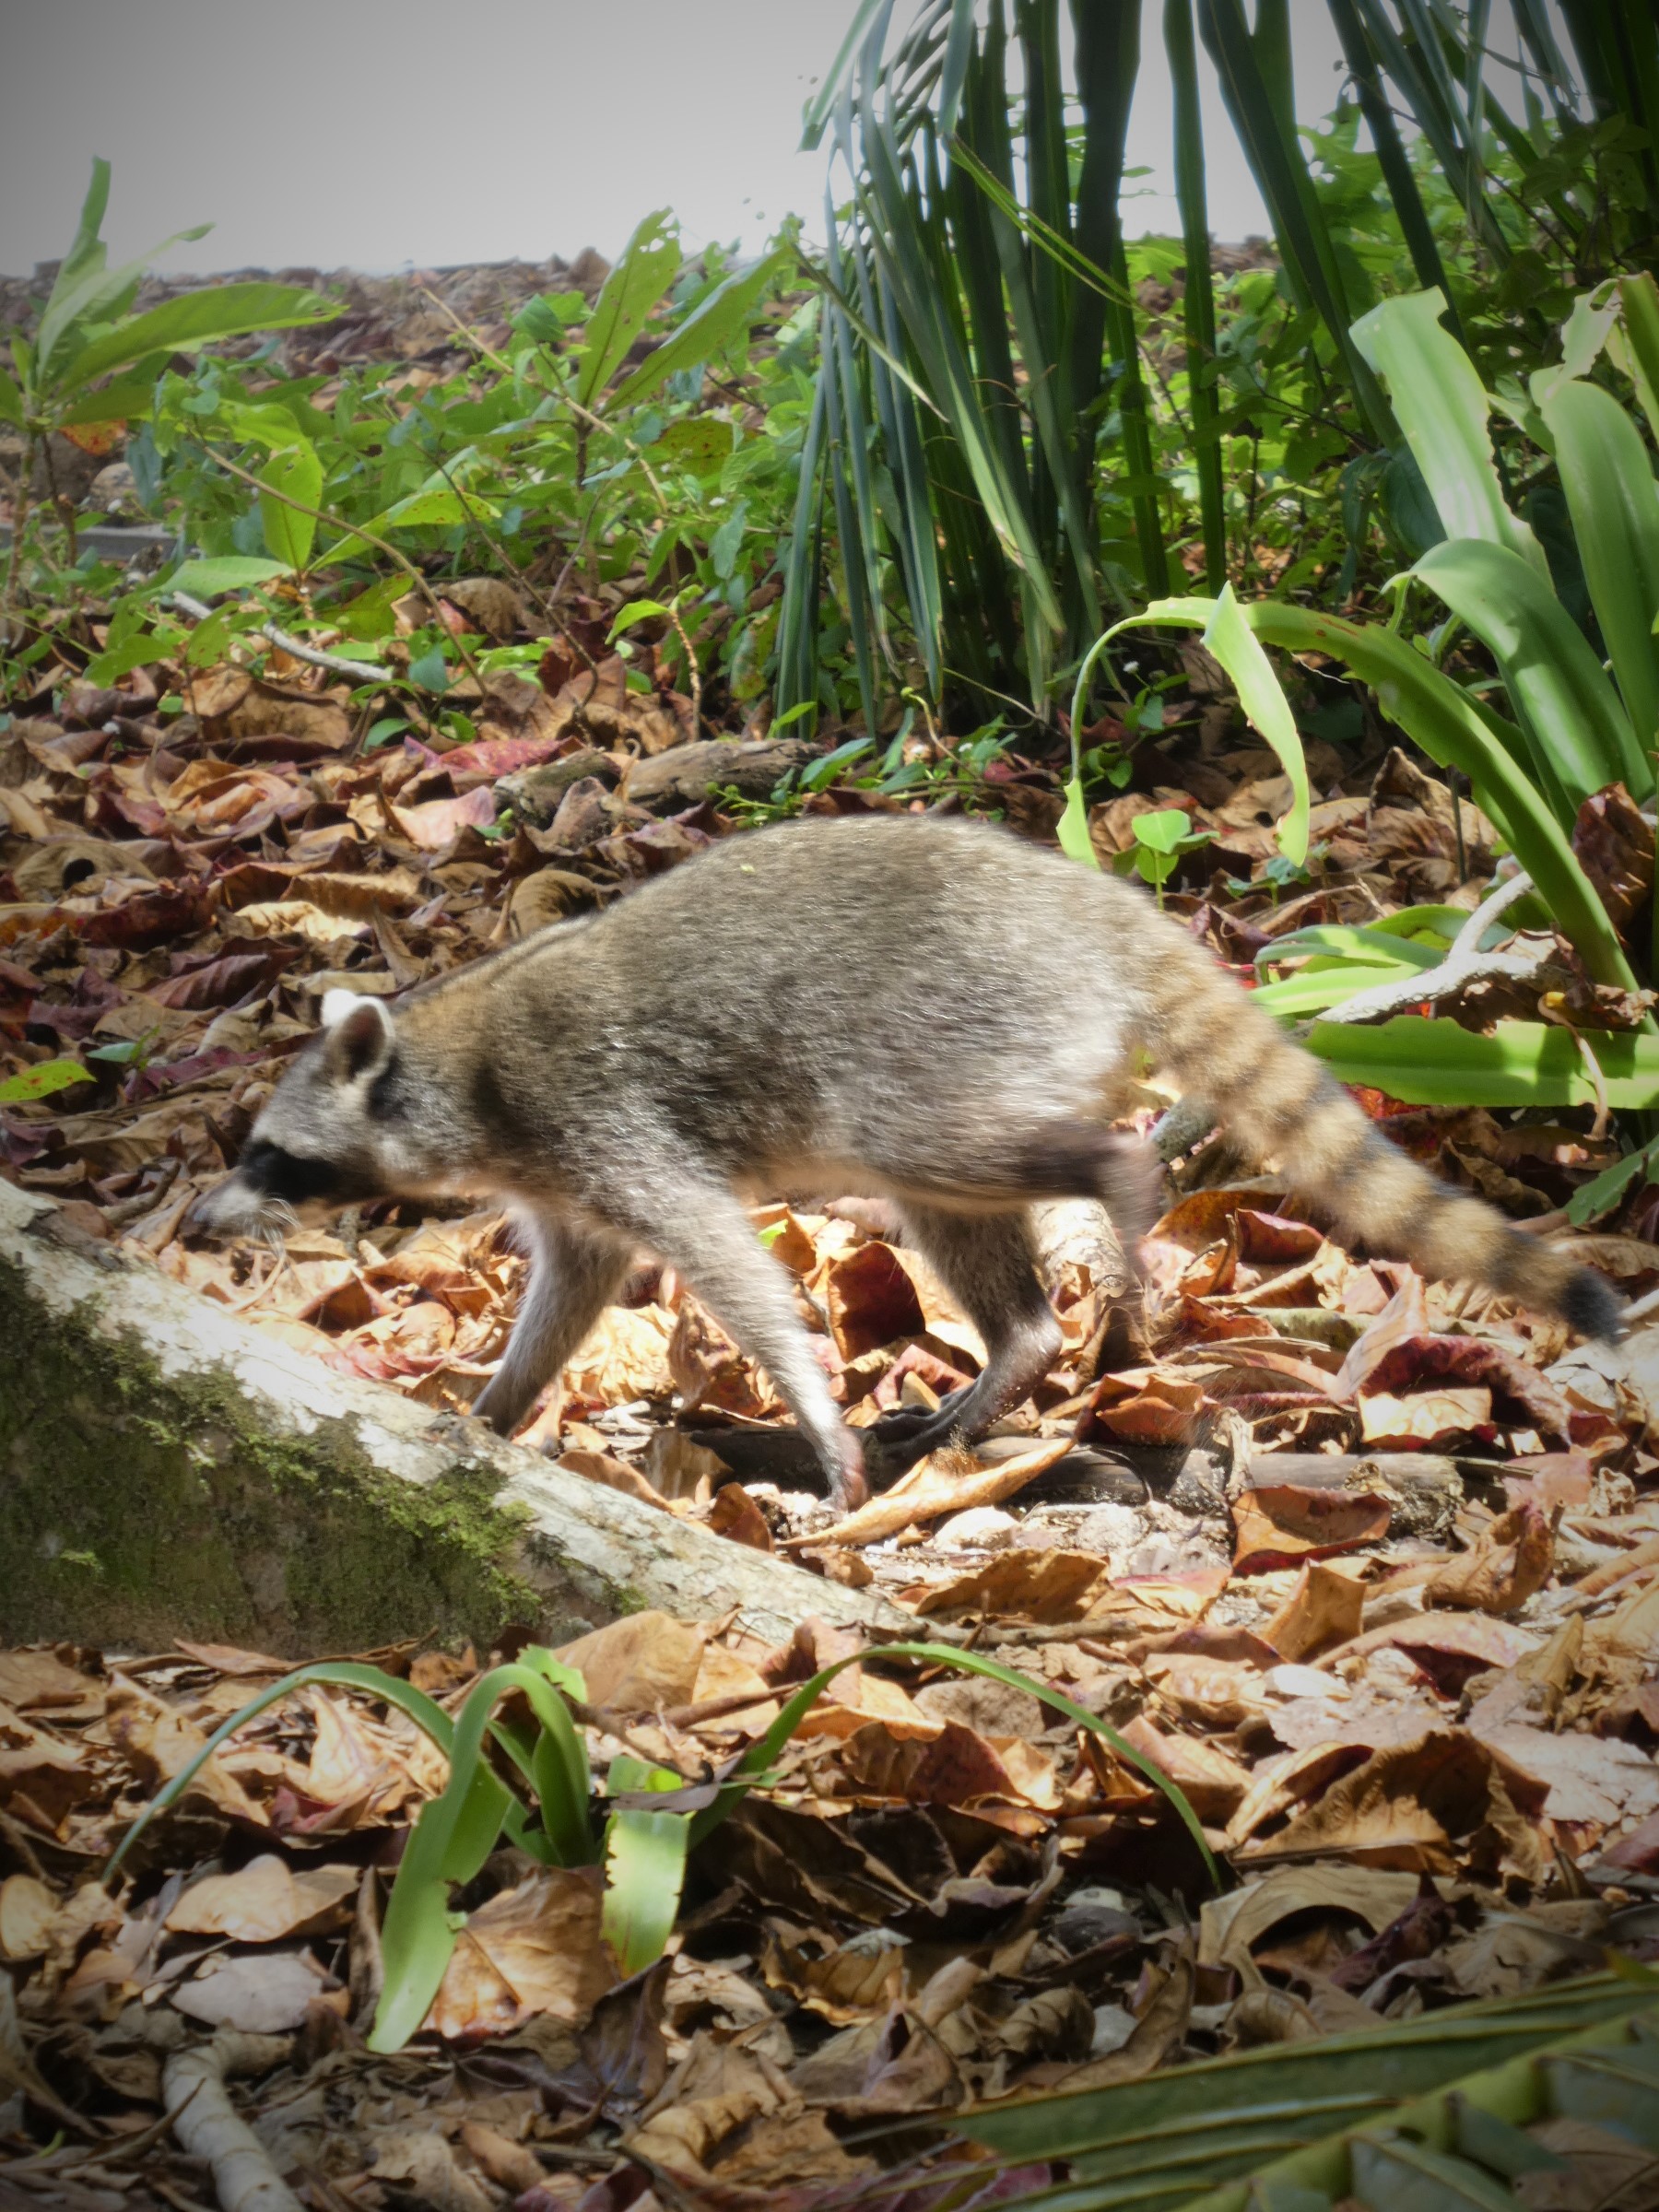 Raccoon at Cahuita by hesaidorshesaid